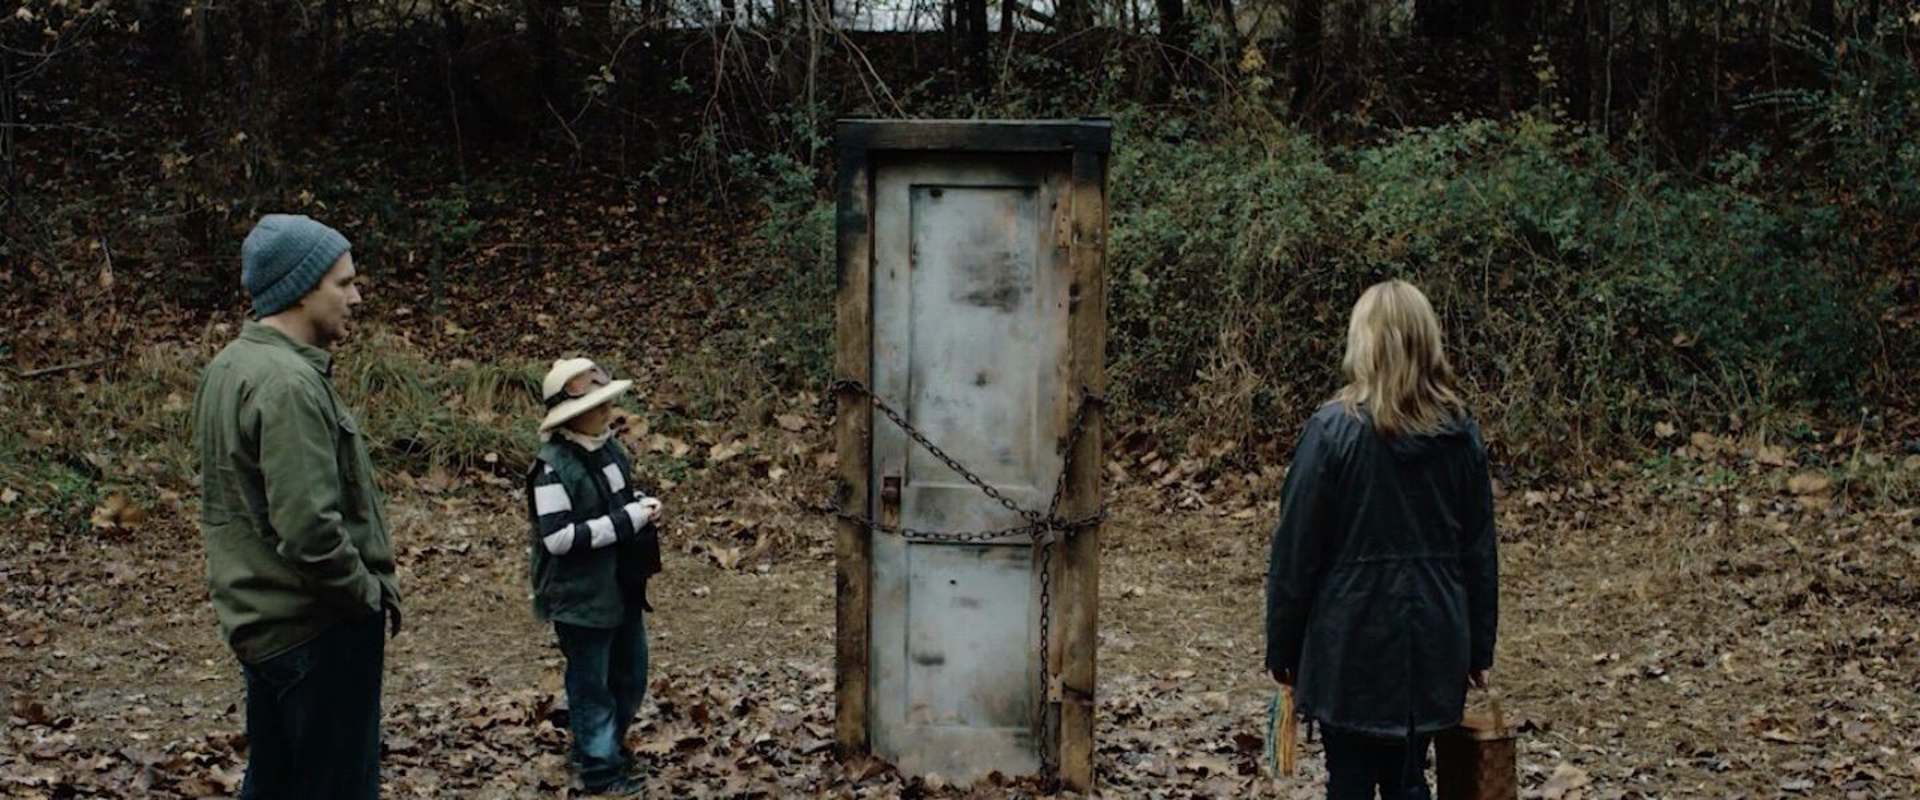 Door in the Woods background 2